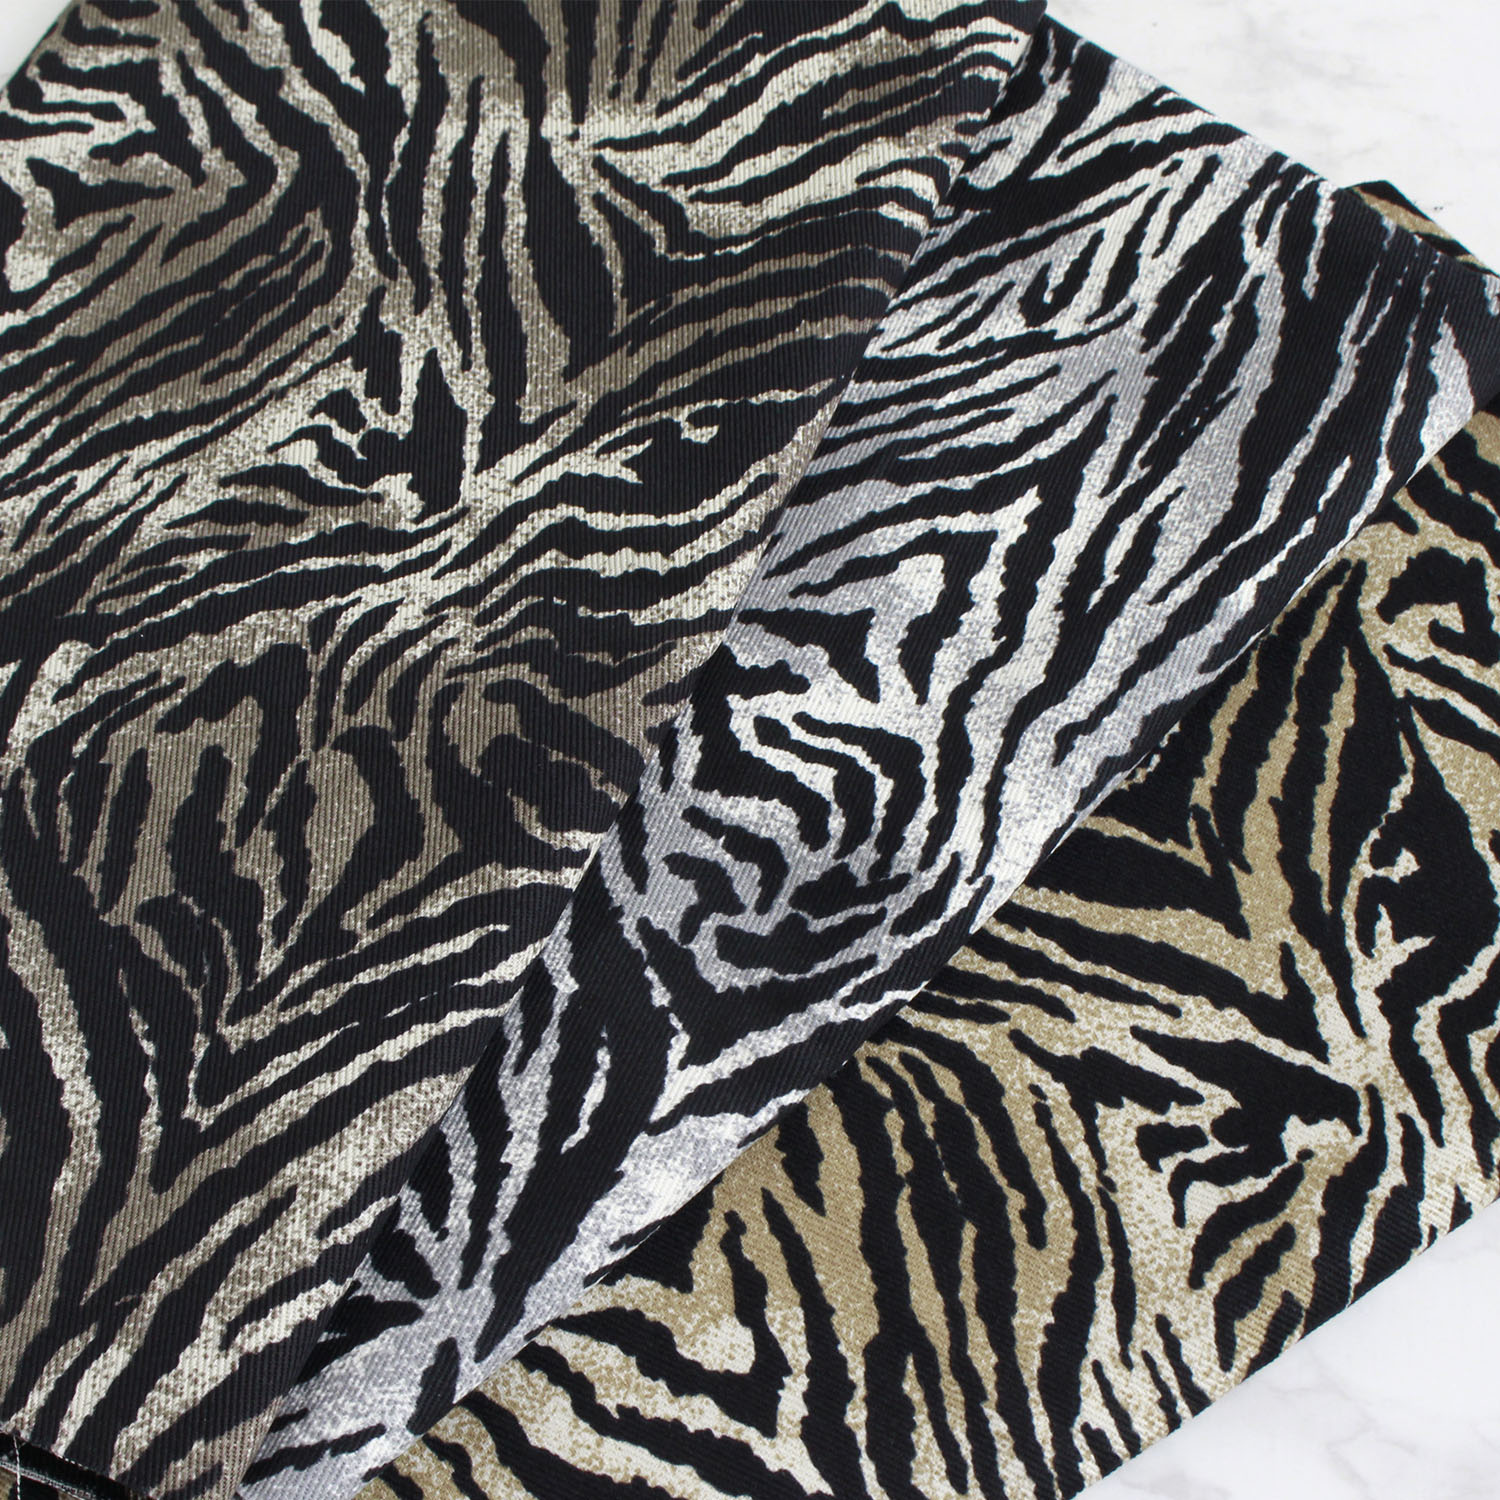 ■IBK6690R-4 Tiger pattern twill fabric Width approx. 110cm Raw fabric approx. 12m (roll)